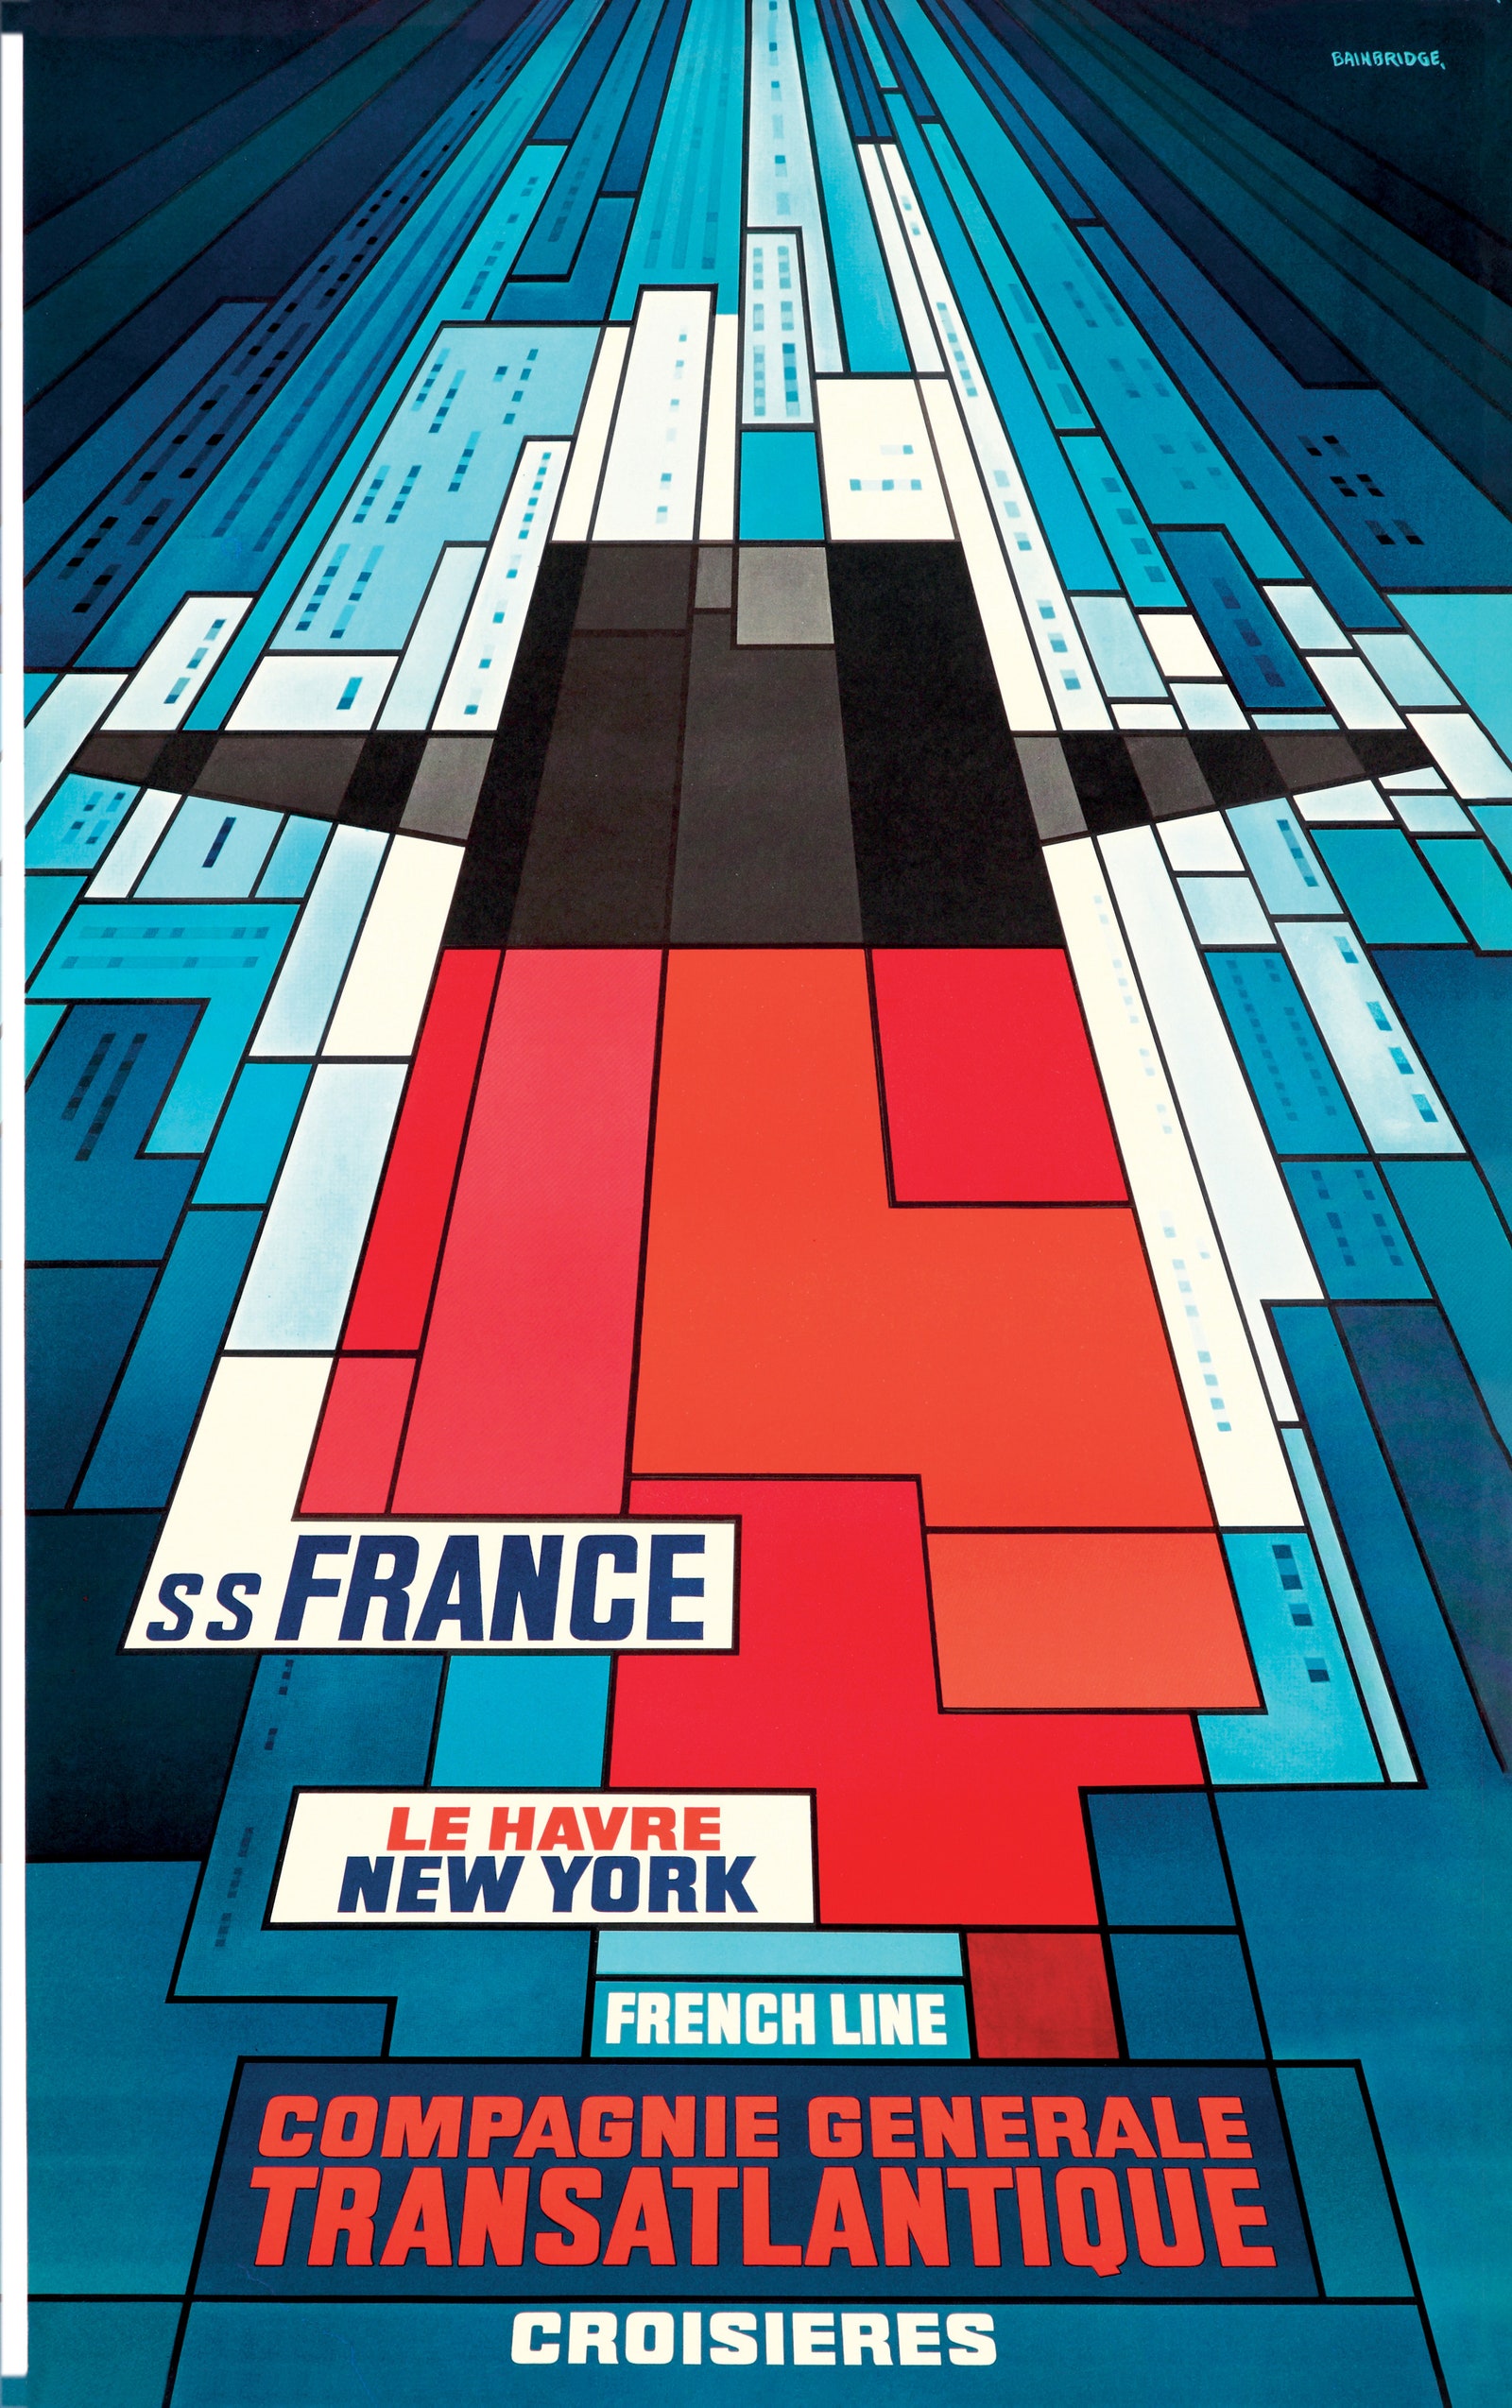 Ein farbenfrohes abstraktes Poster für ein Schiff, das von New York nach Frankreich fährt.